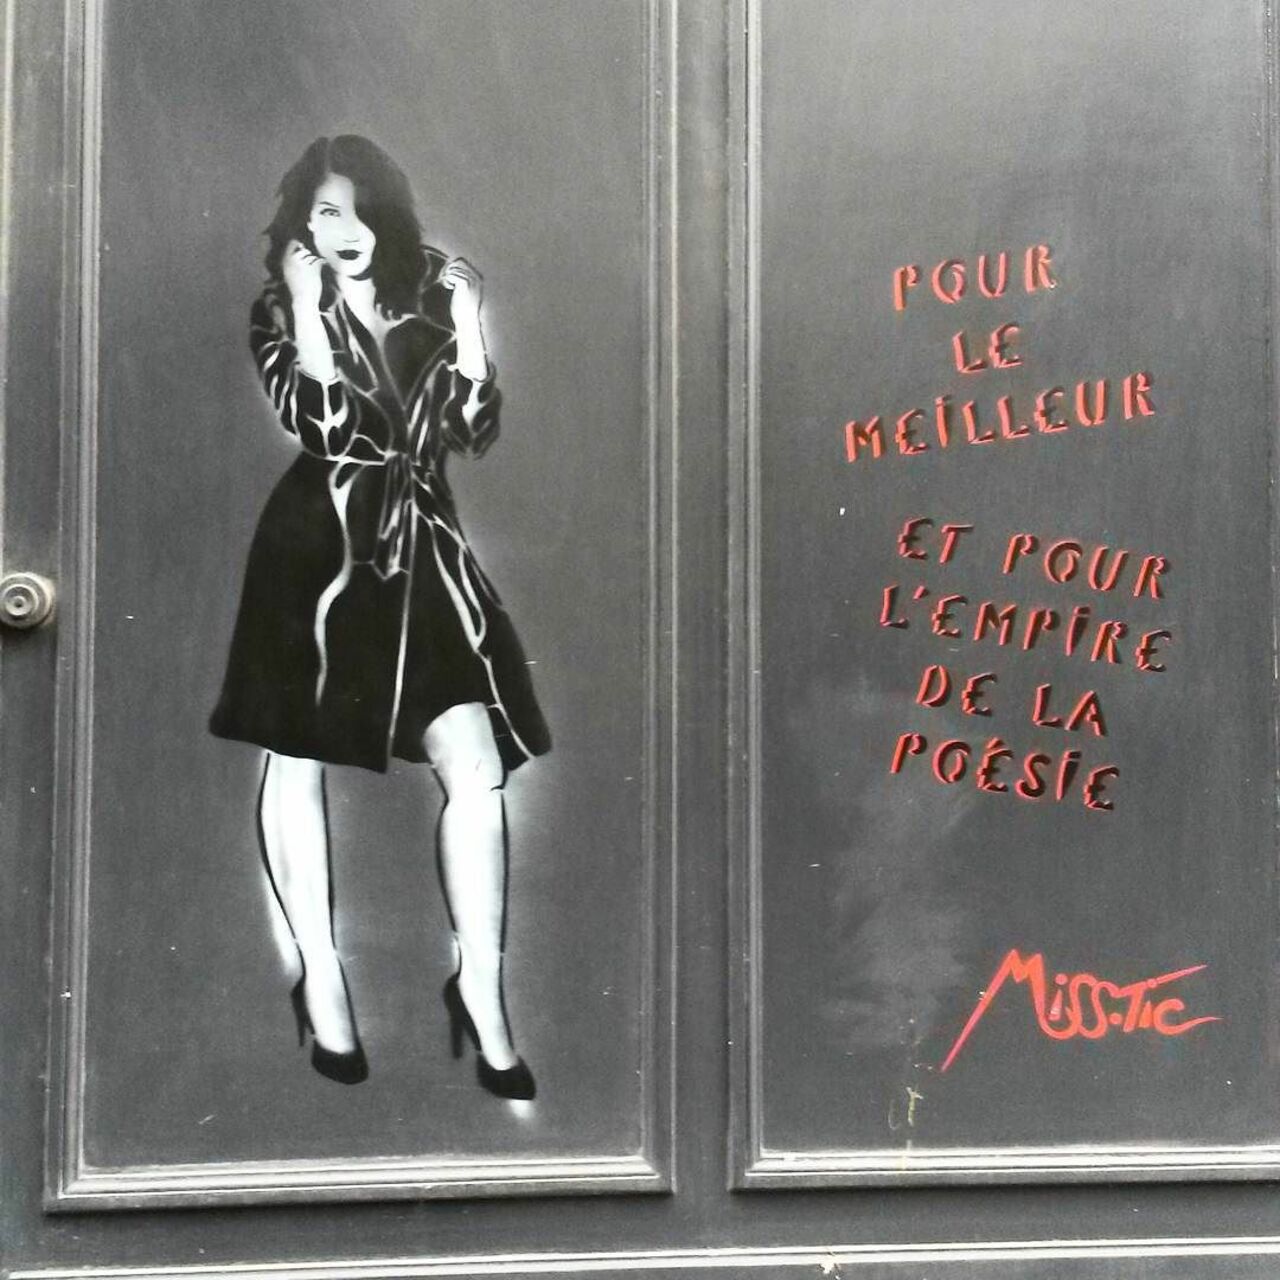 #Paris #graffiti photo by @princessepepett http://ift.tt/1MK3A6J #StreetArt https://t.co/f3LKEH8OIT